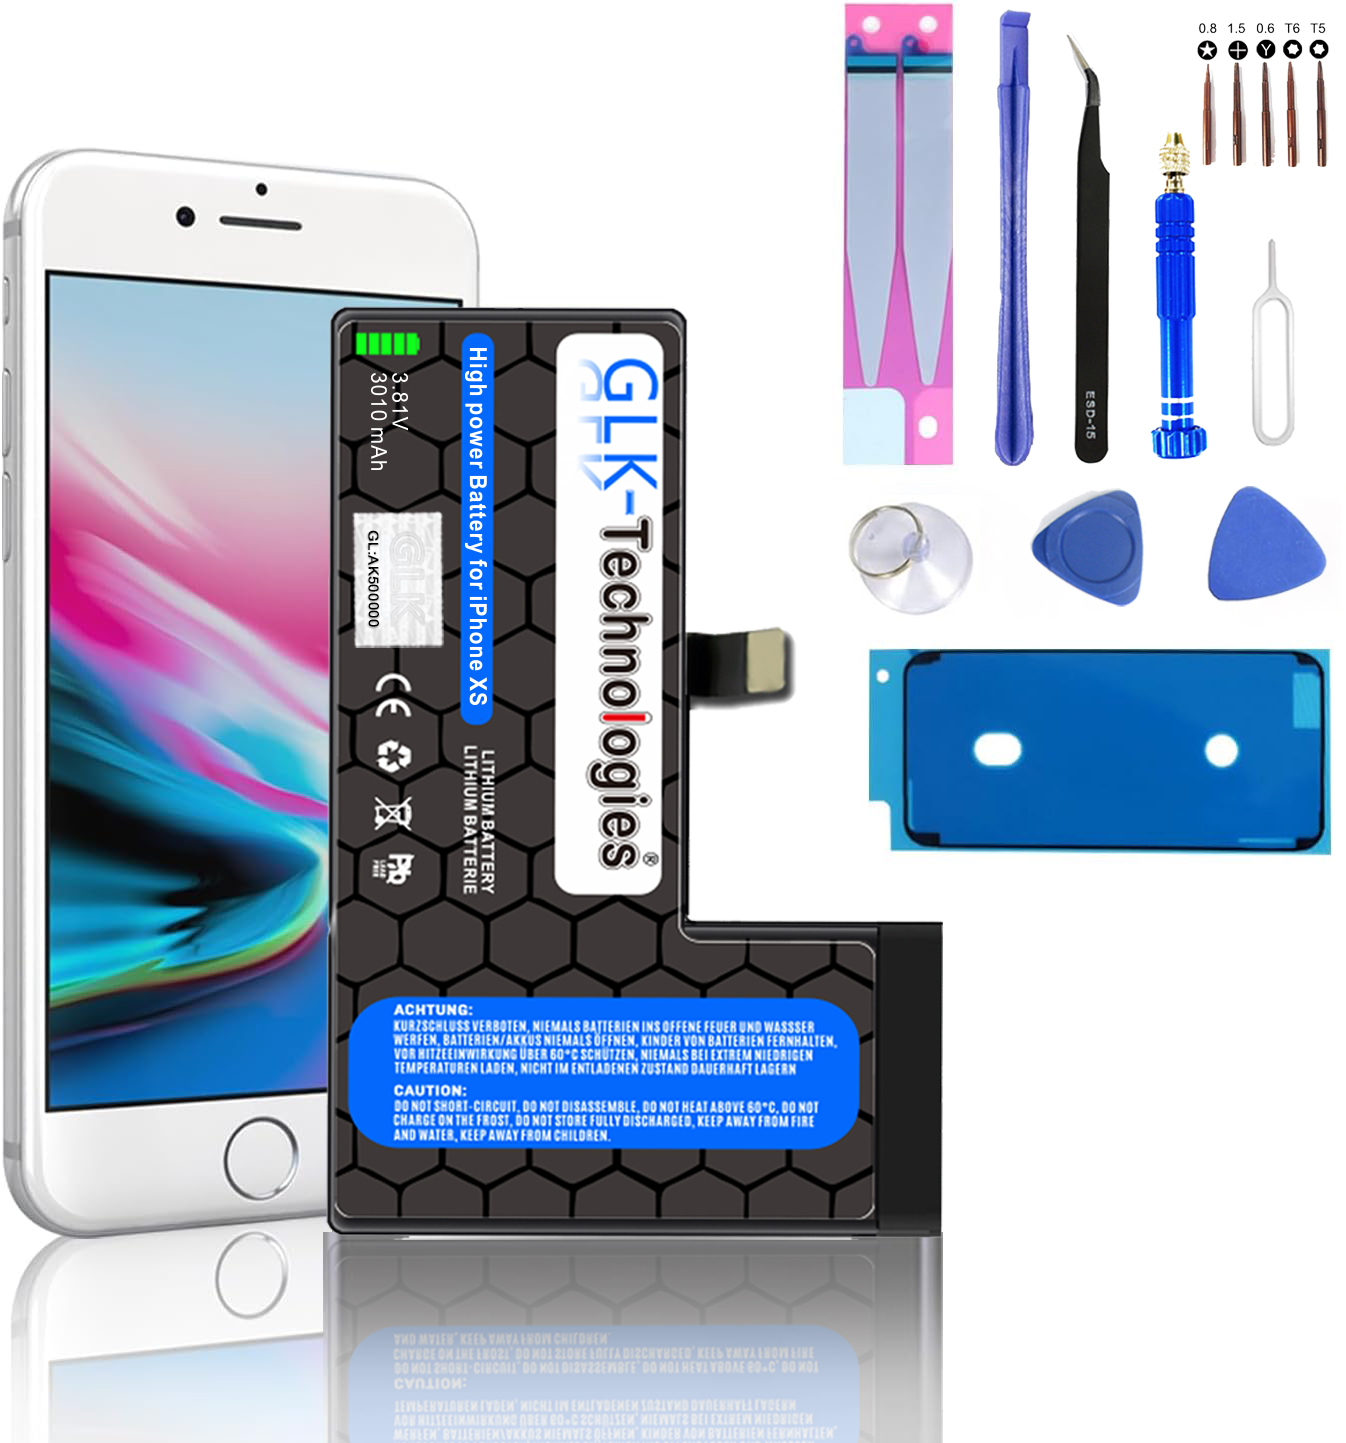 Werkzeug 2740 inkl. PROFI XS mAh Lithium-Ionen-Akku GLK-TECHNOLOGIES Akku, Smartphone iPhone Apple Ersatz